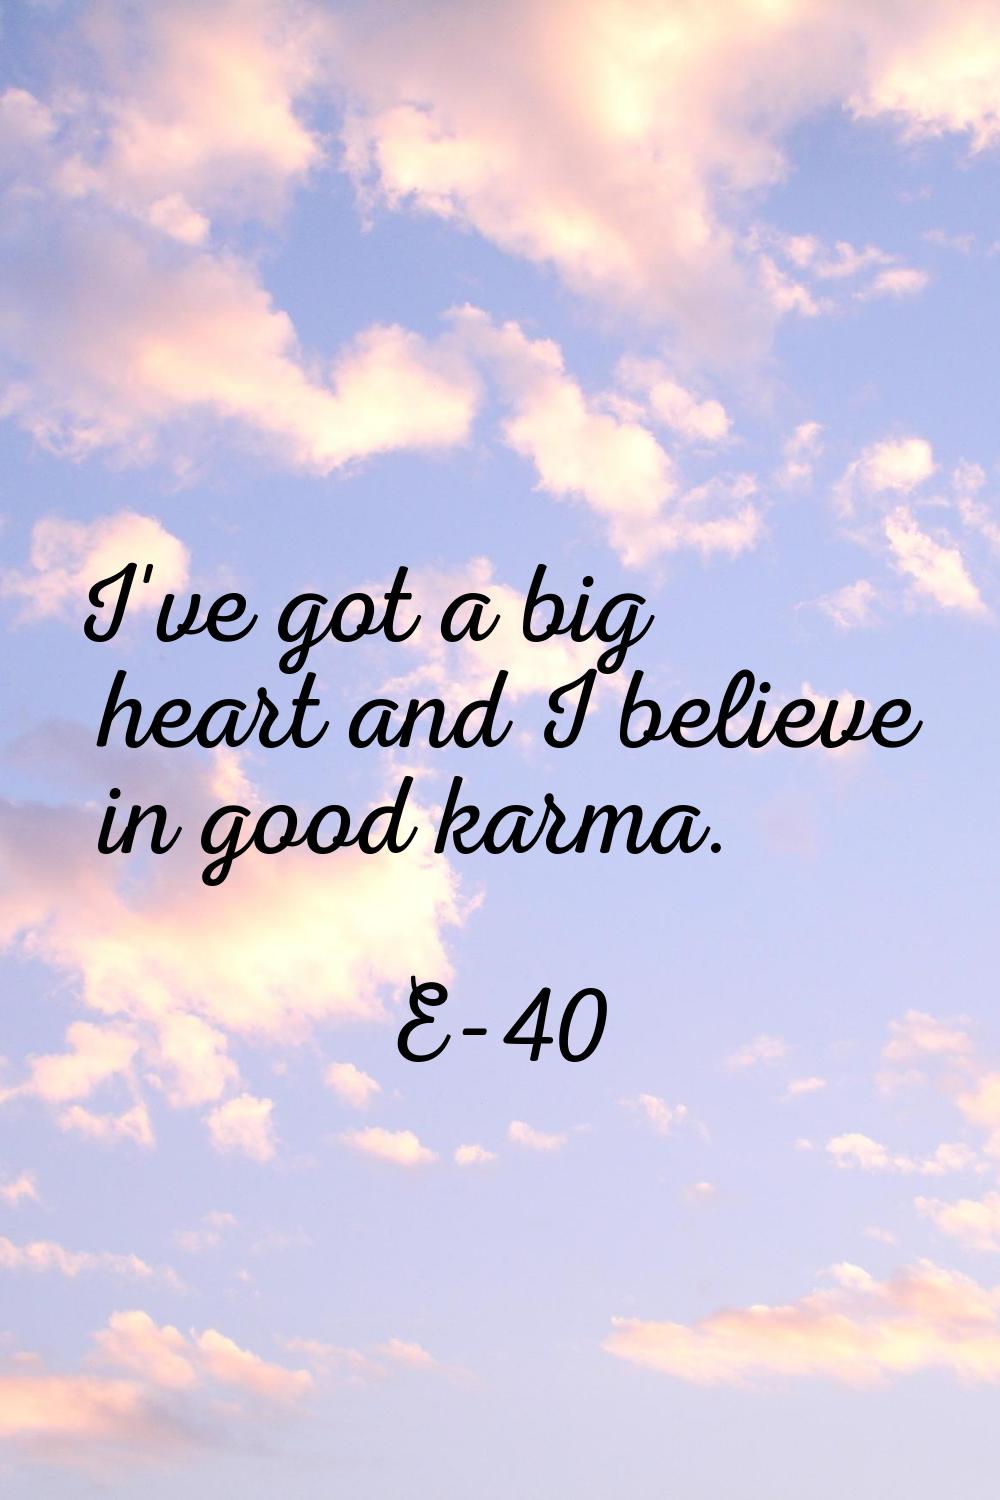 I've got a big heart and I believe in good karma.